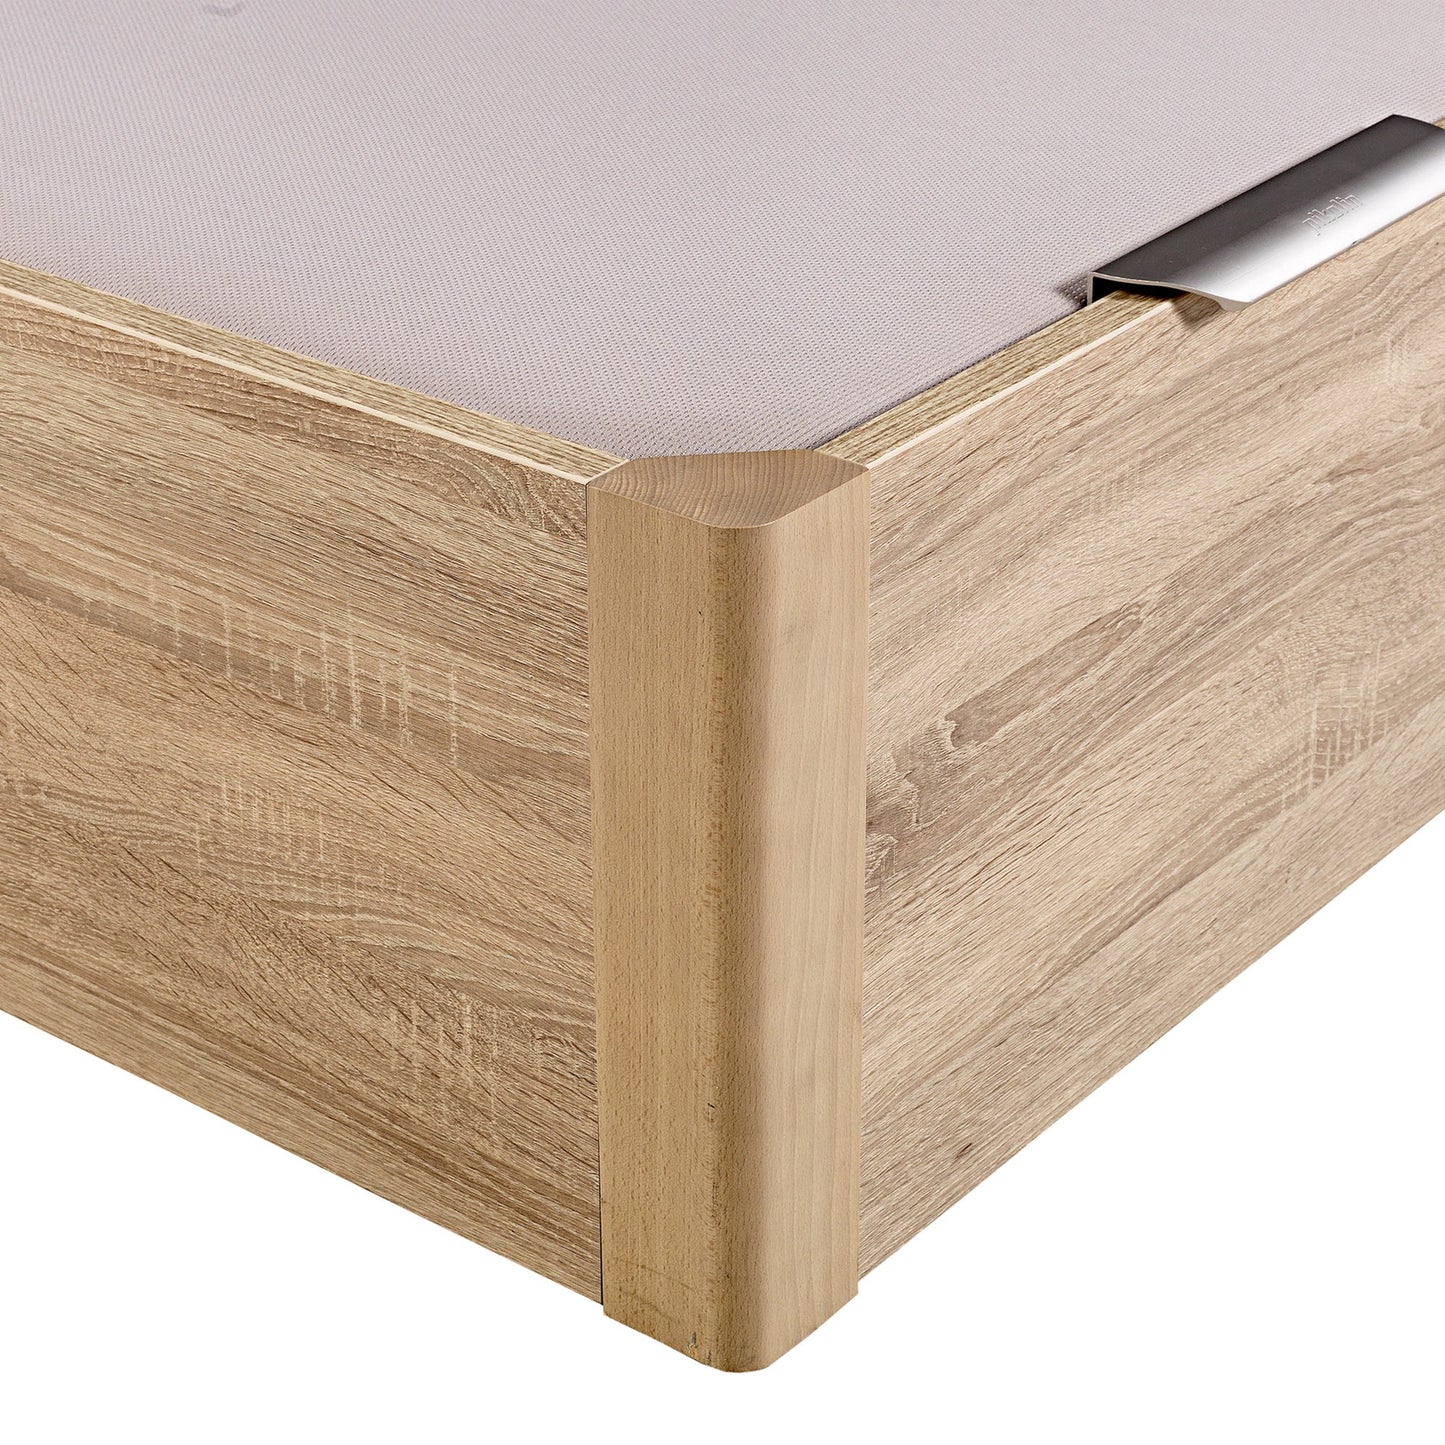 Canapé abatible de madera de alta capacidad tapa doble de color natural - DESIGN - 160x220